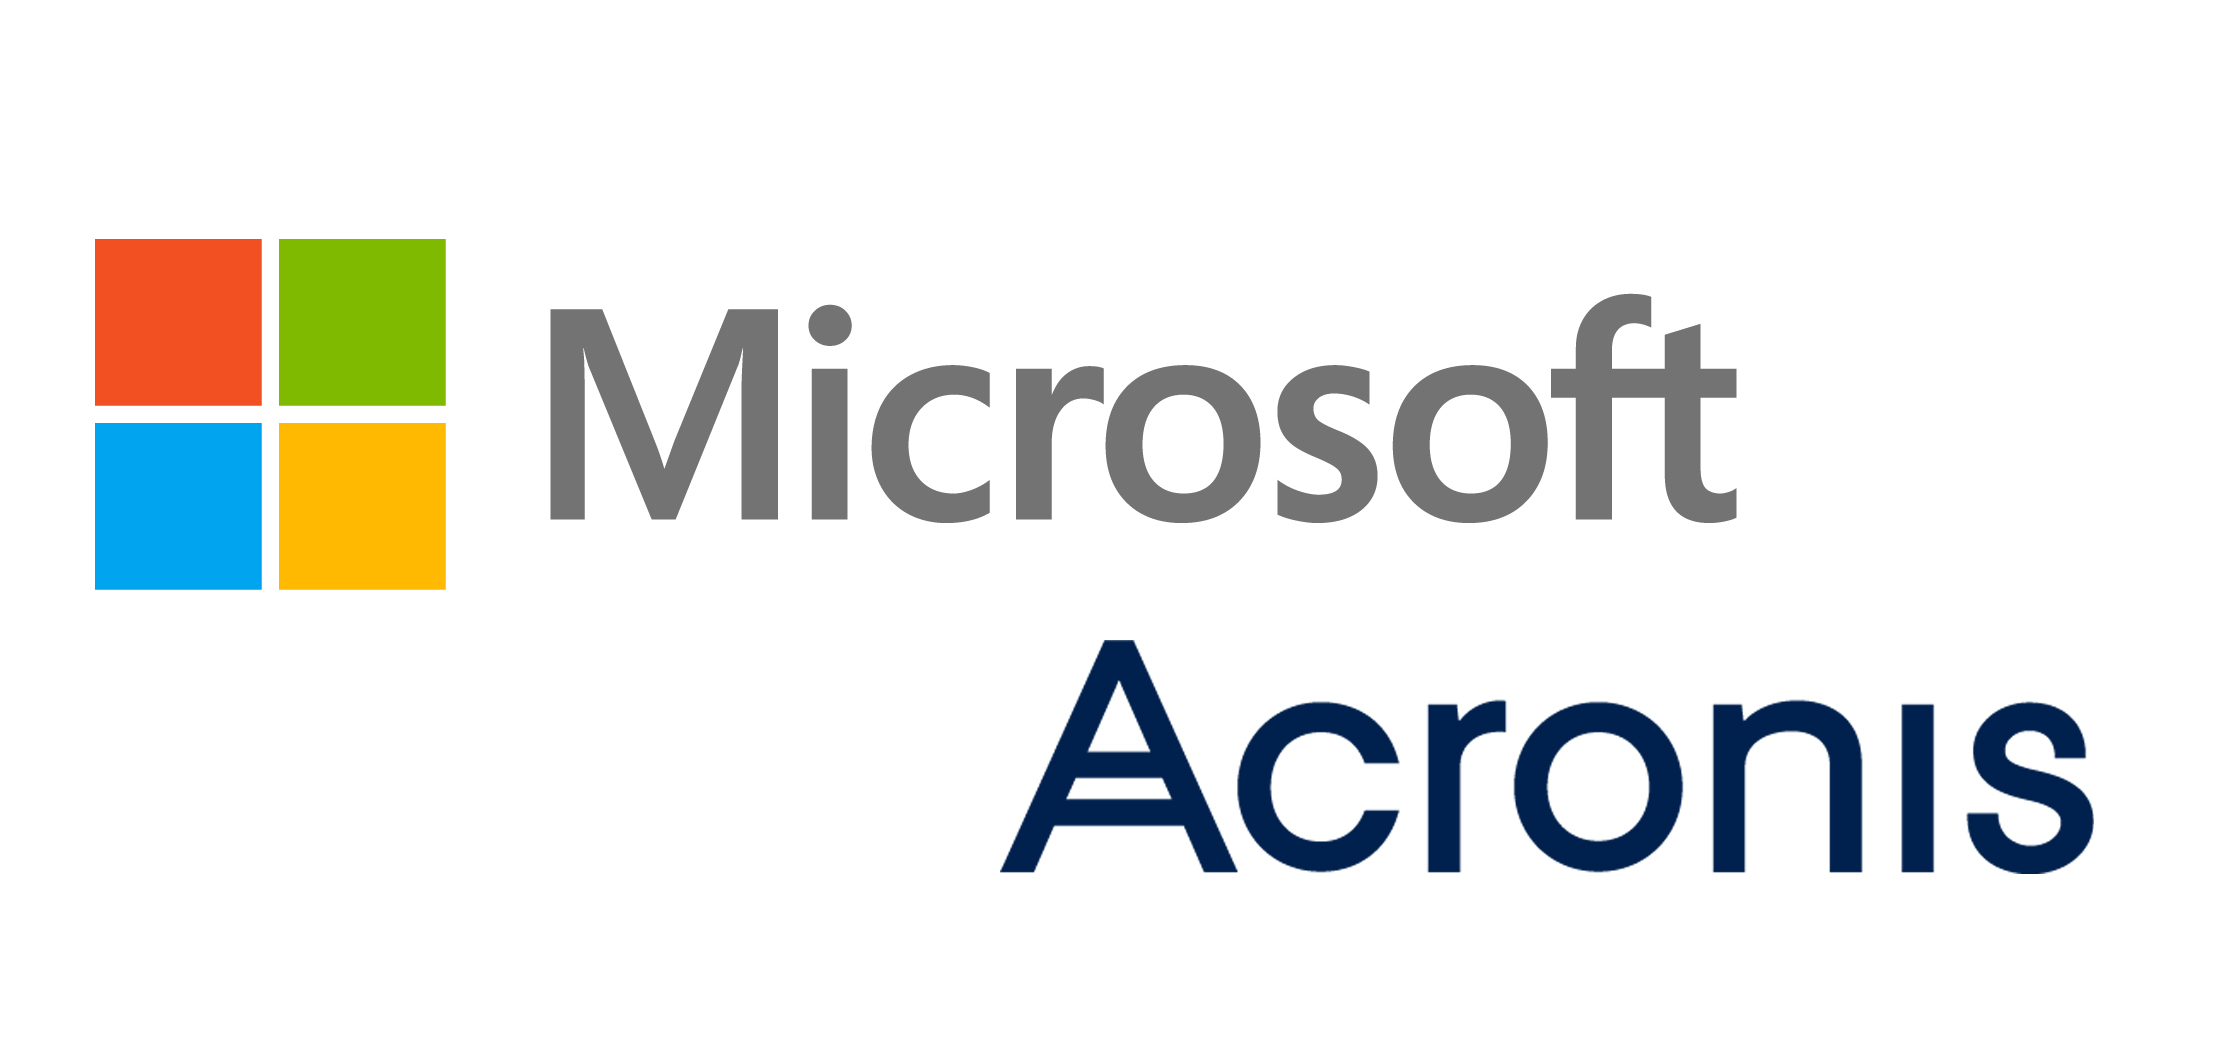 Foto 1 - Acronis offre un'ampia protezione per app e dati in ambienti Microsoft